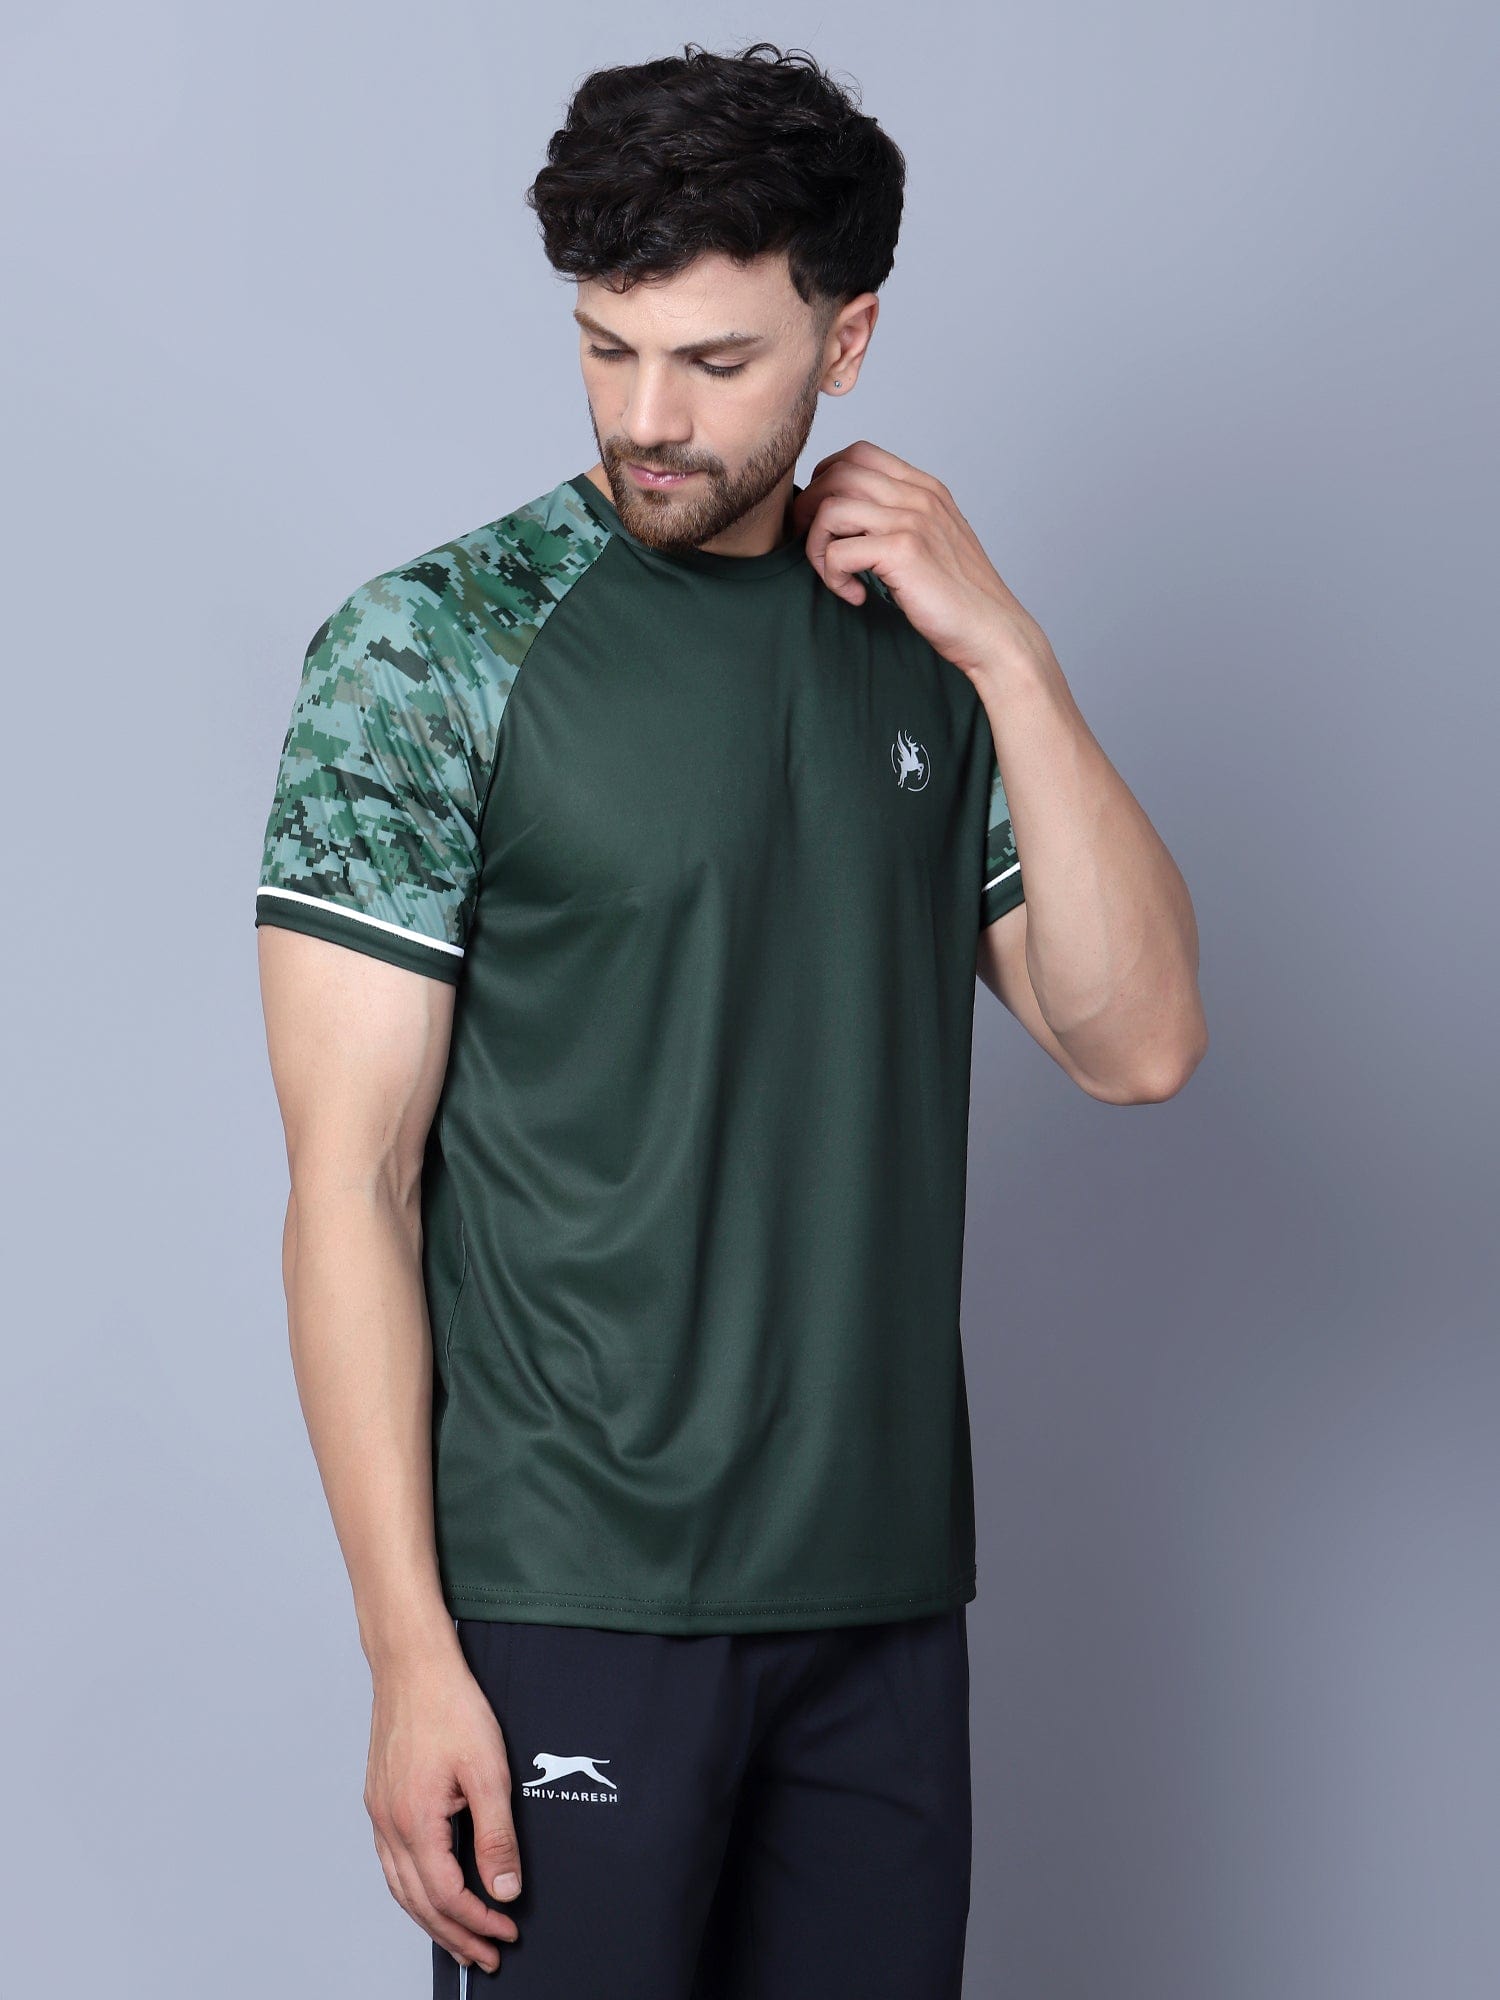 Performance Polyester Men's T-Shirt Emerald Green - trenz